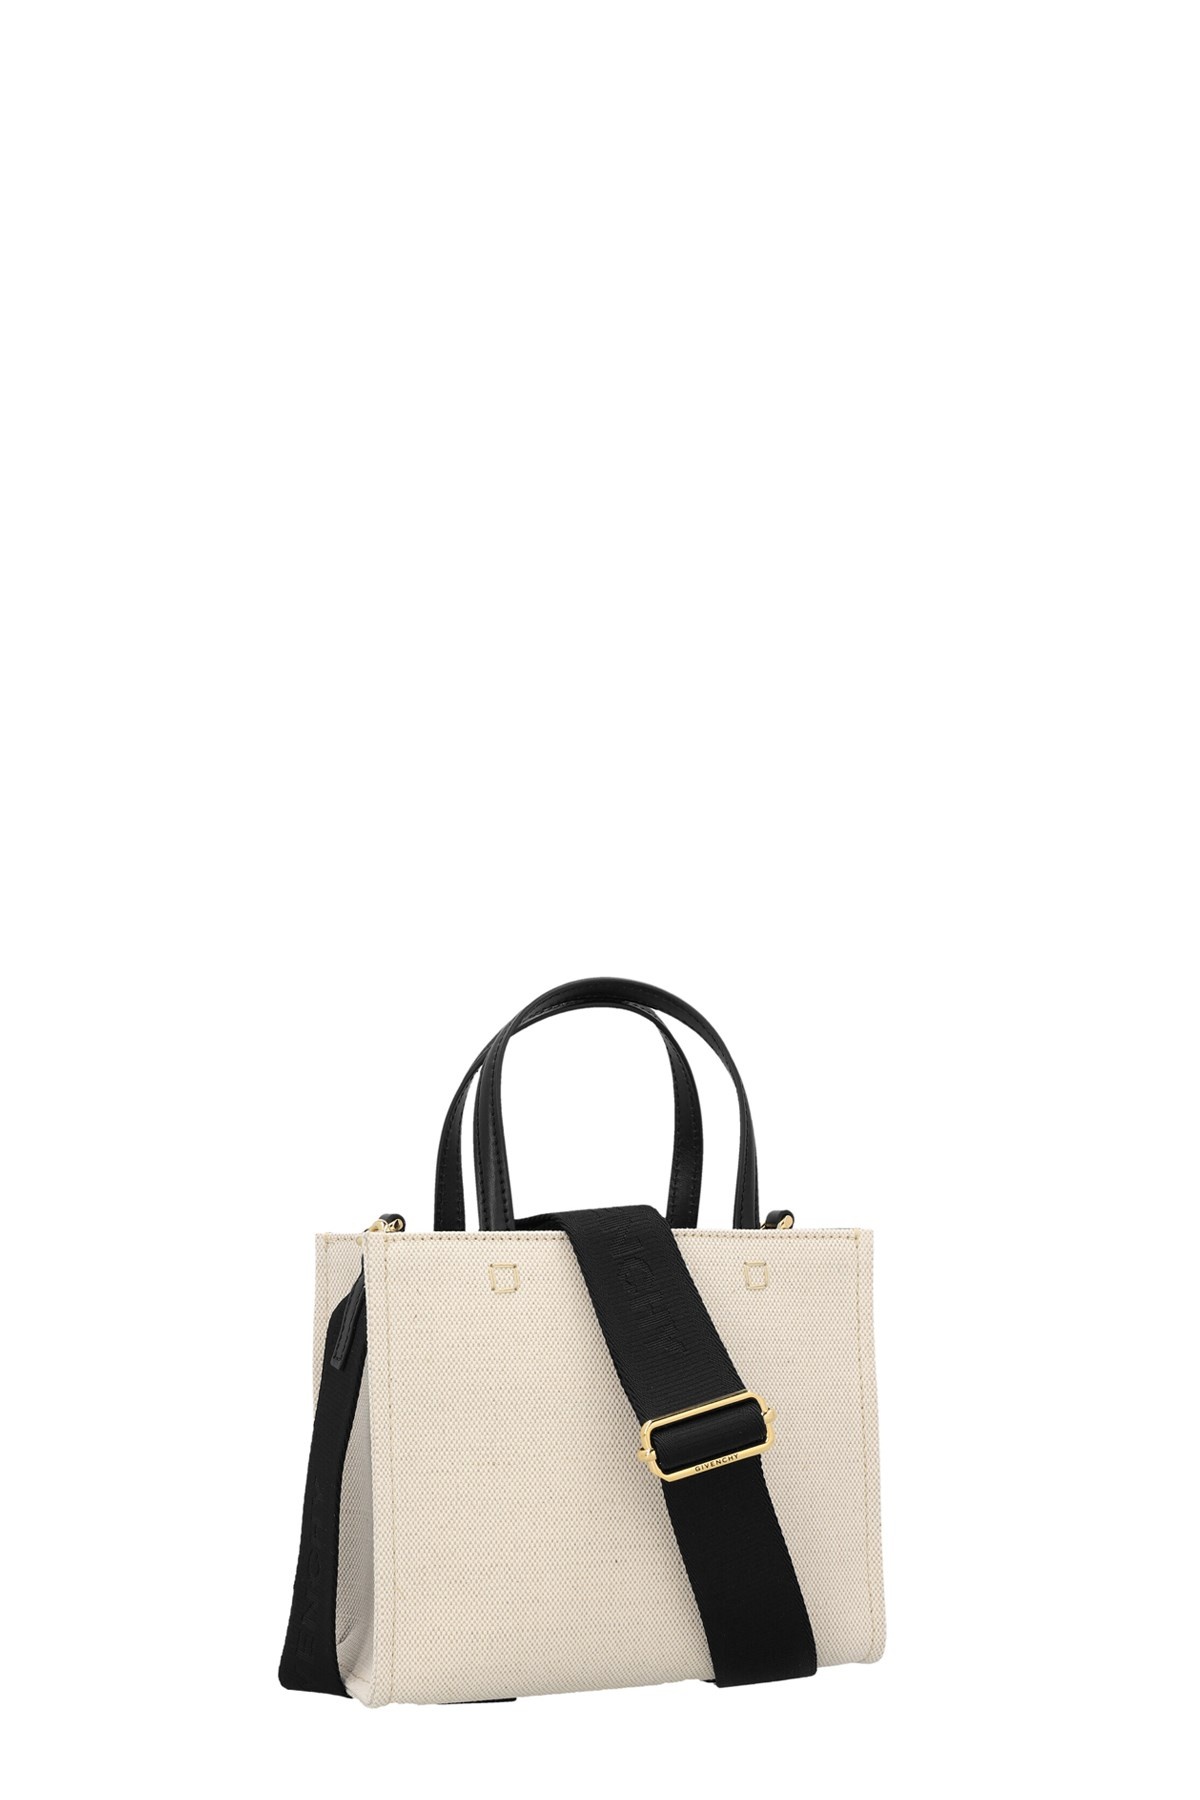 'Mini Shopping’ handbag - 2